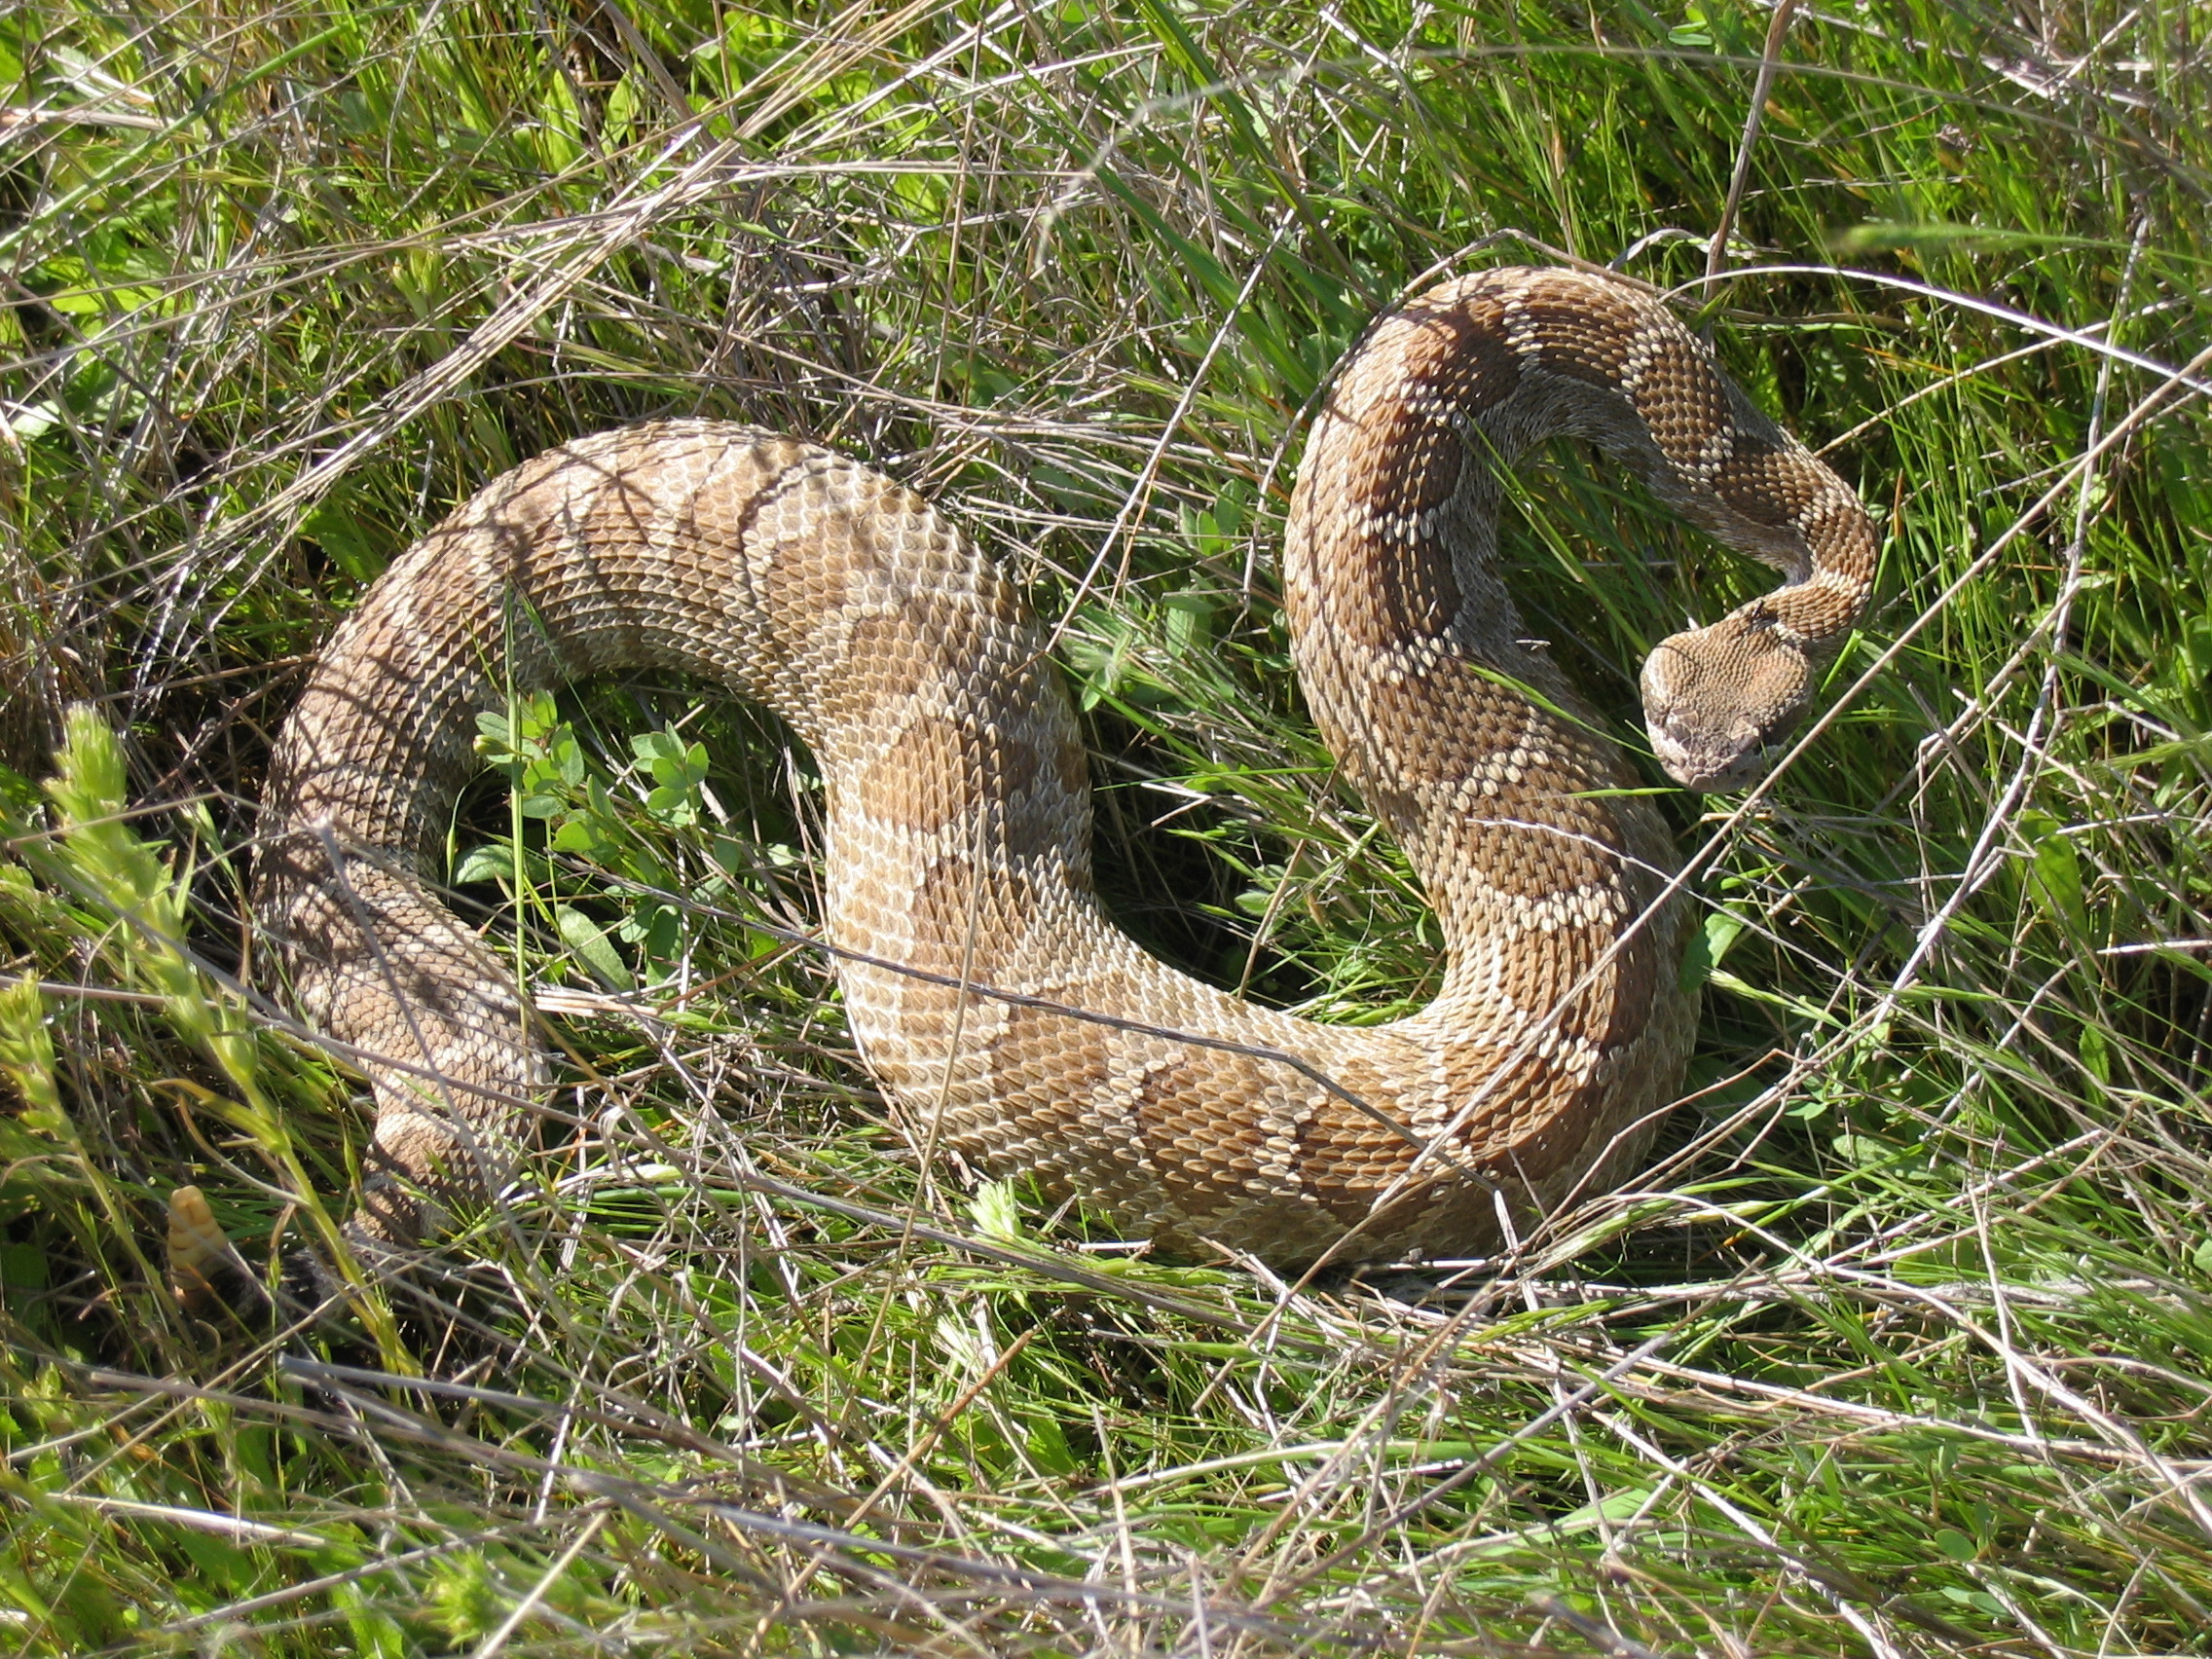 King Snake Rattlesnake